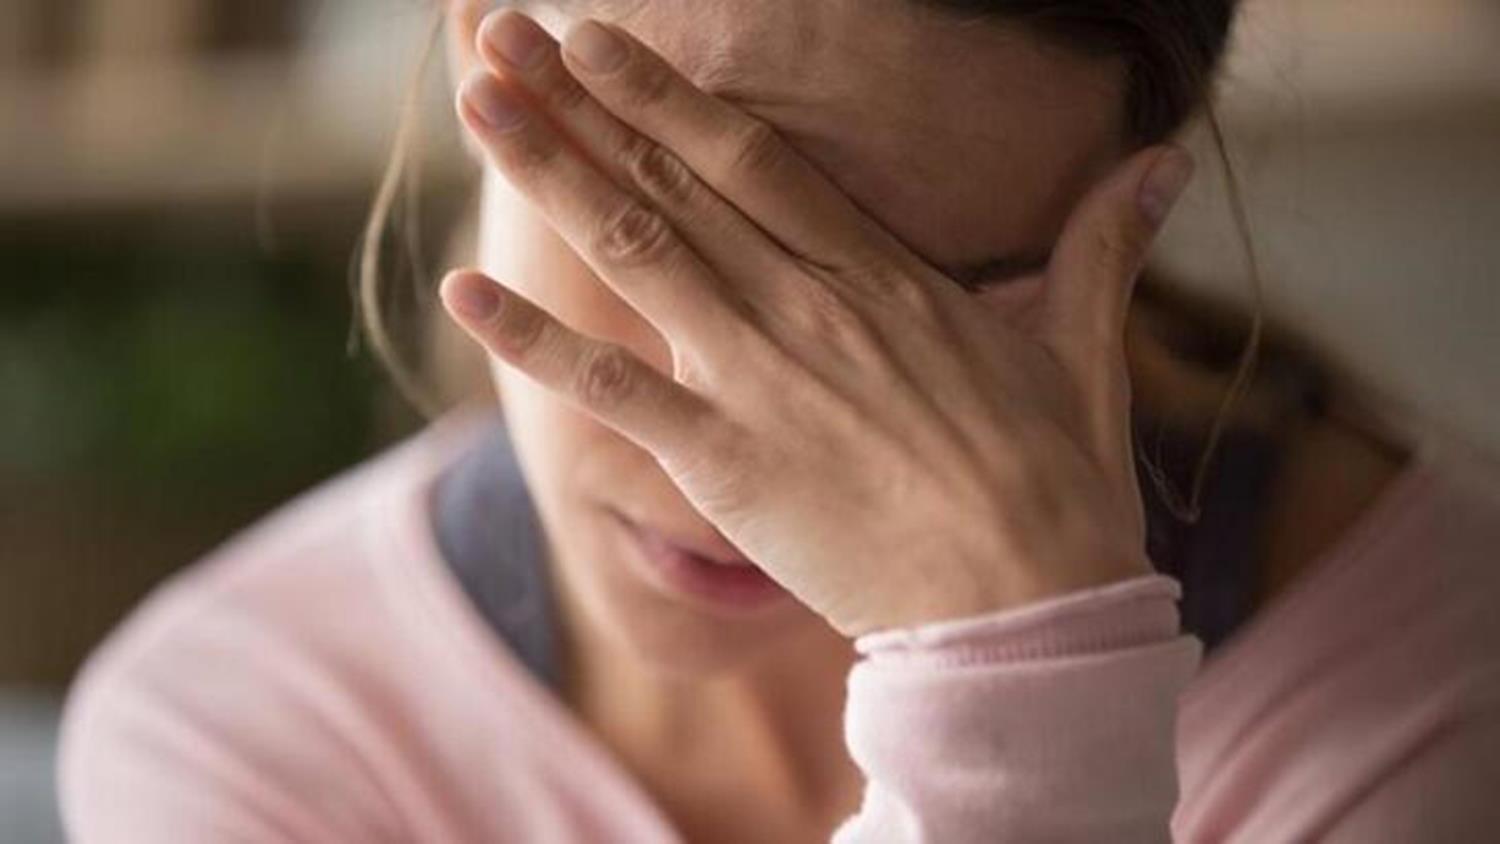 Kadnlar erkeklerden 2 kat daha sk depresyona yakalanyor'